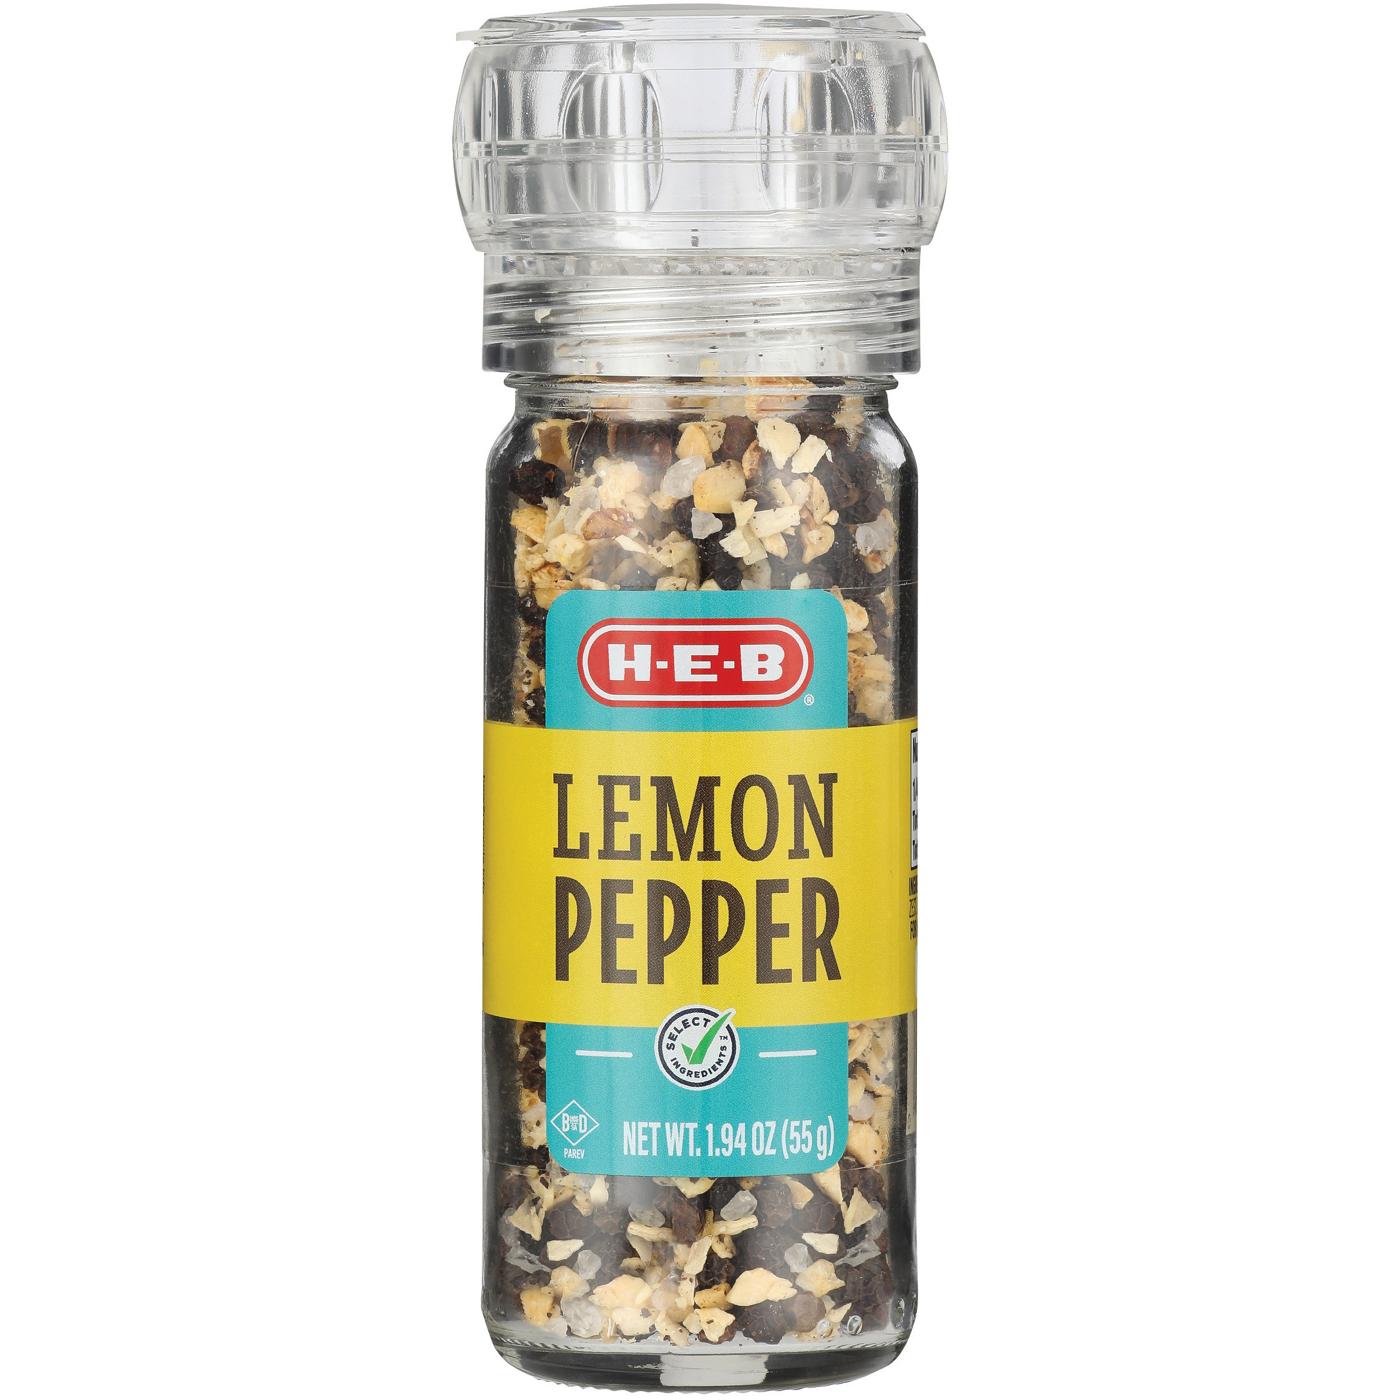 H-E-B Lemon Pepper Grinder; image 1 of 2